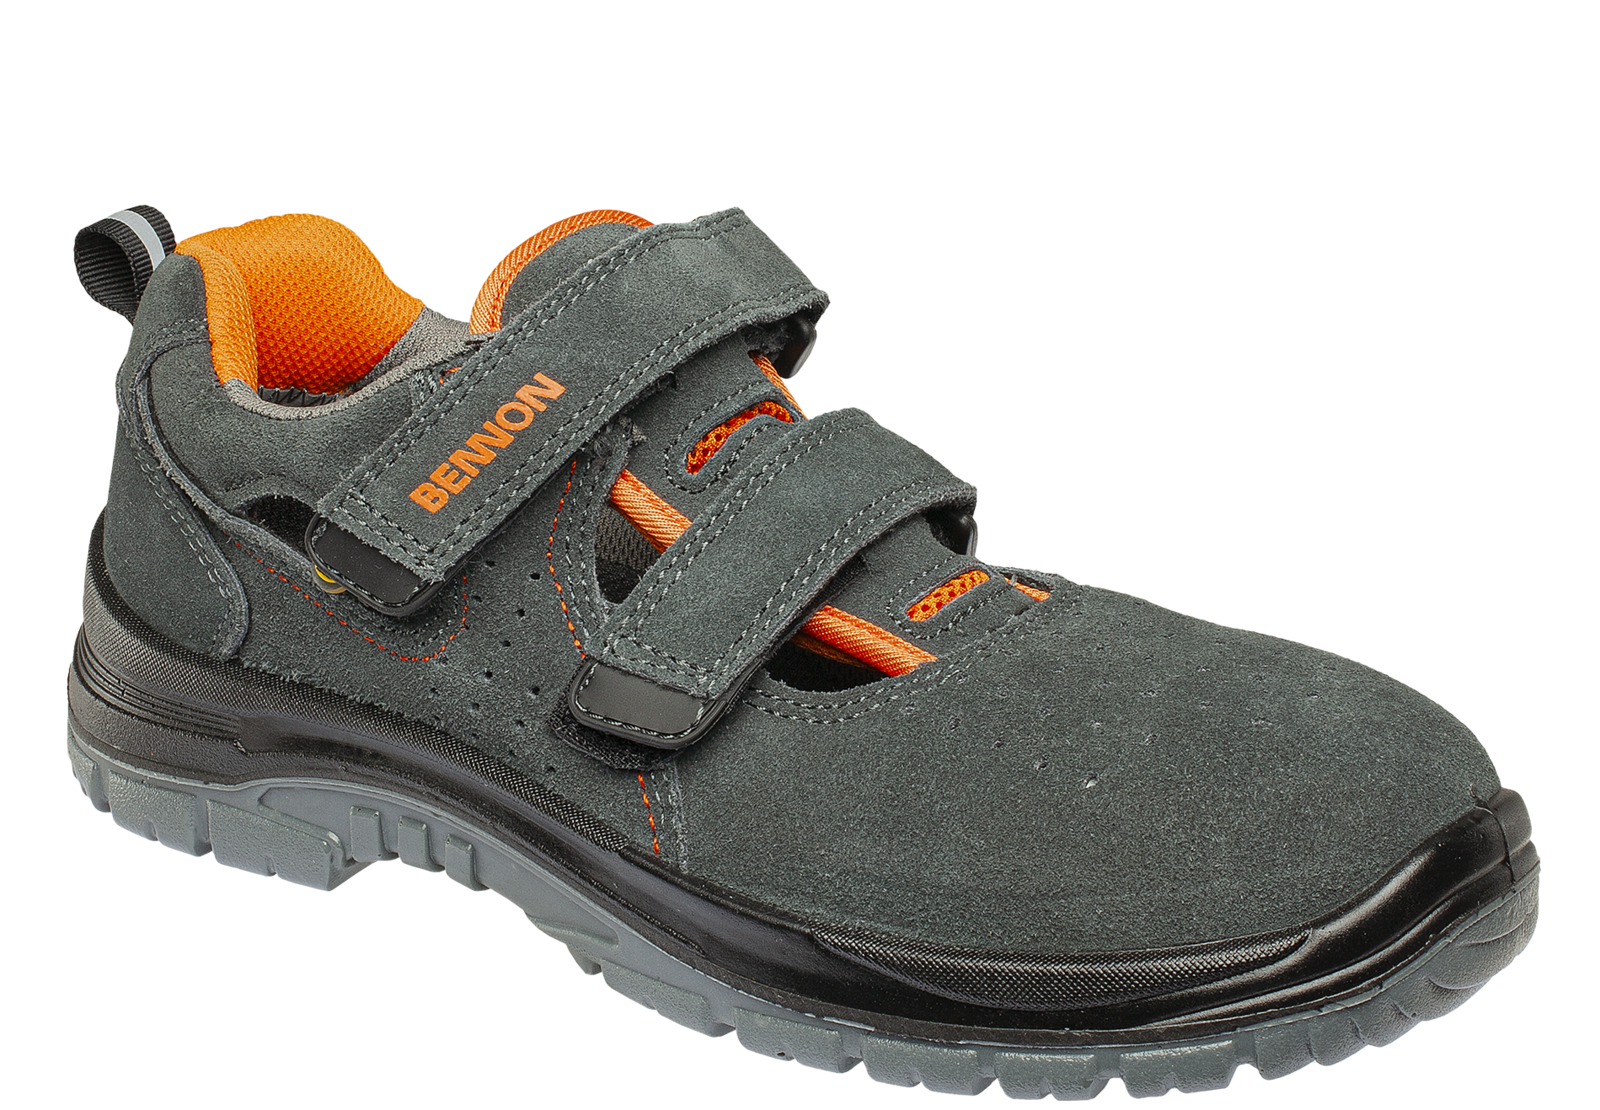 Bezpečnostné sandále Bennon Tobler S1 ESD - veľkosť: 41, farba: sivá/oranžová